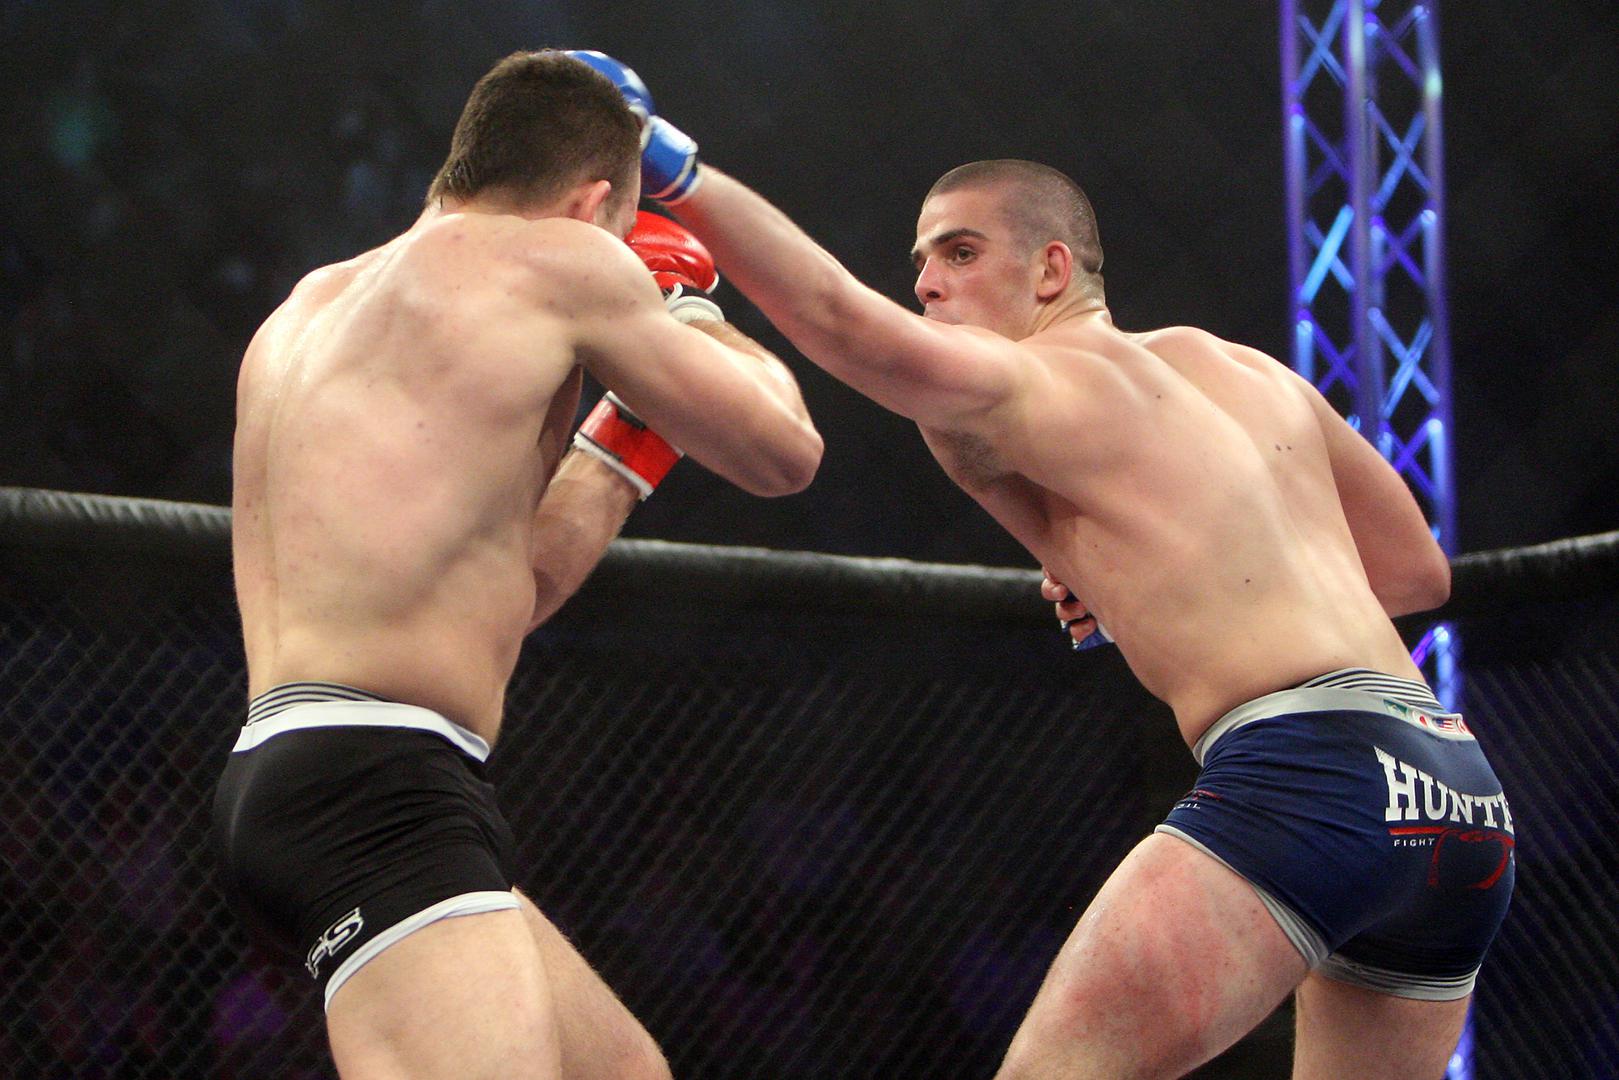 Ovdje vidimo njegovu borbu 2013. u četvrtfinalu hrvatske MMA lige protiv Mateja Jurina